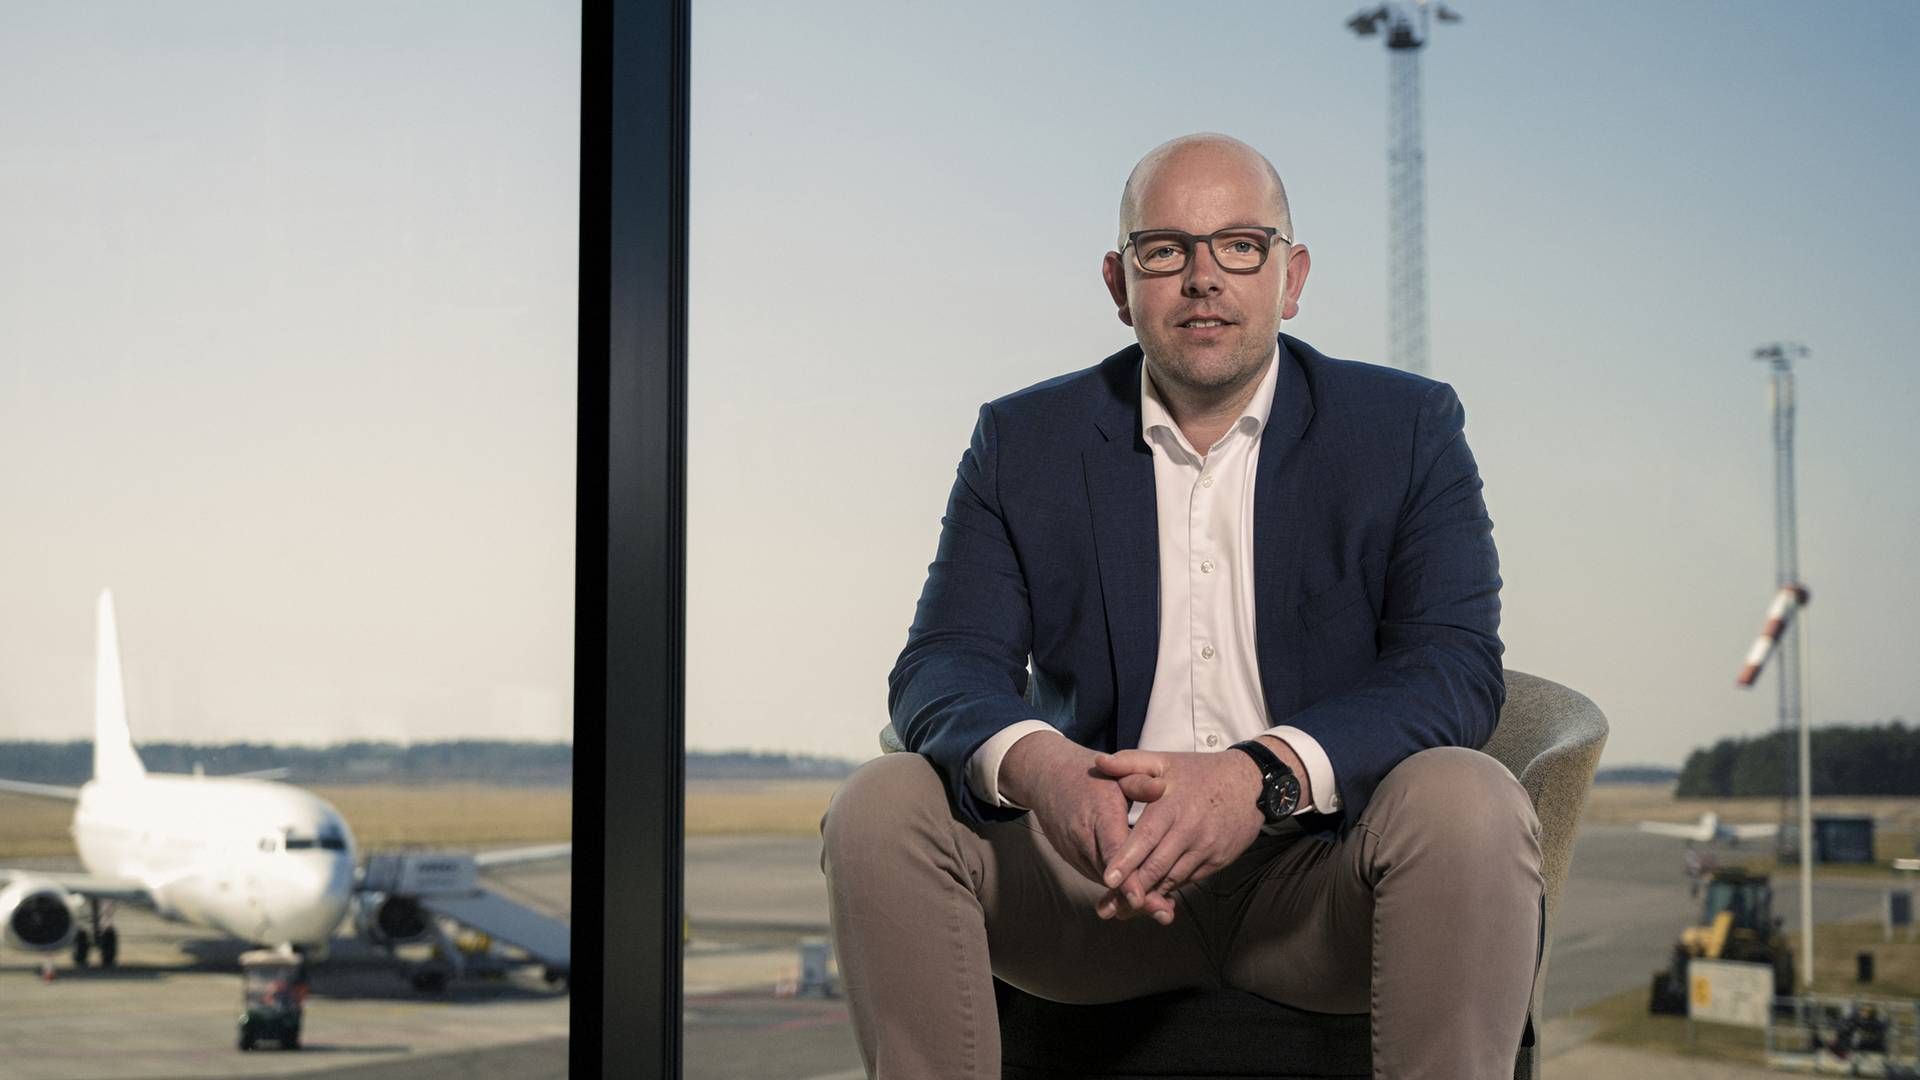 Brian Worm er ny direktør i Aarhus Lufthavn fra 1. april 2022. | Foto: PR / Aarhus Lufthavn